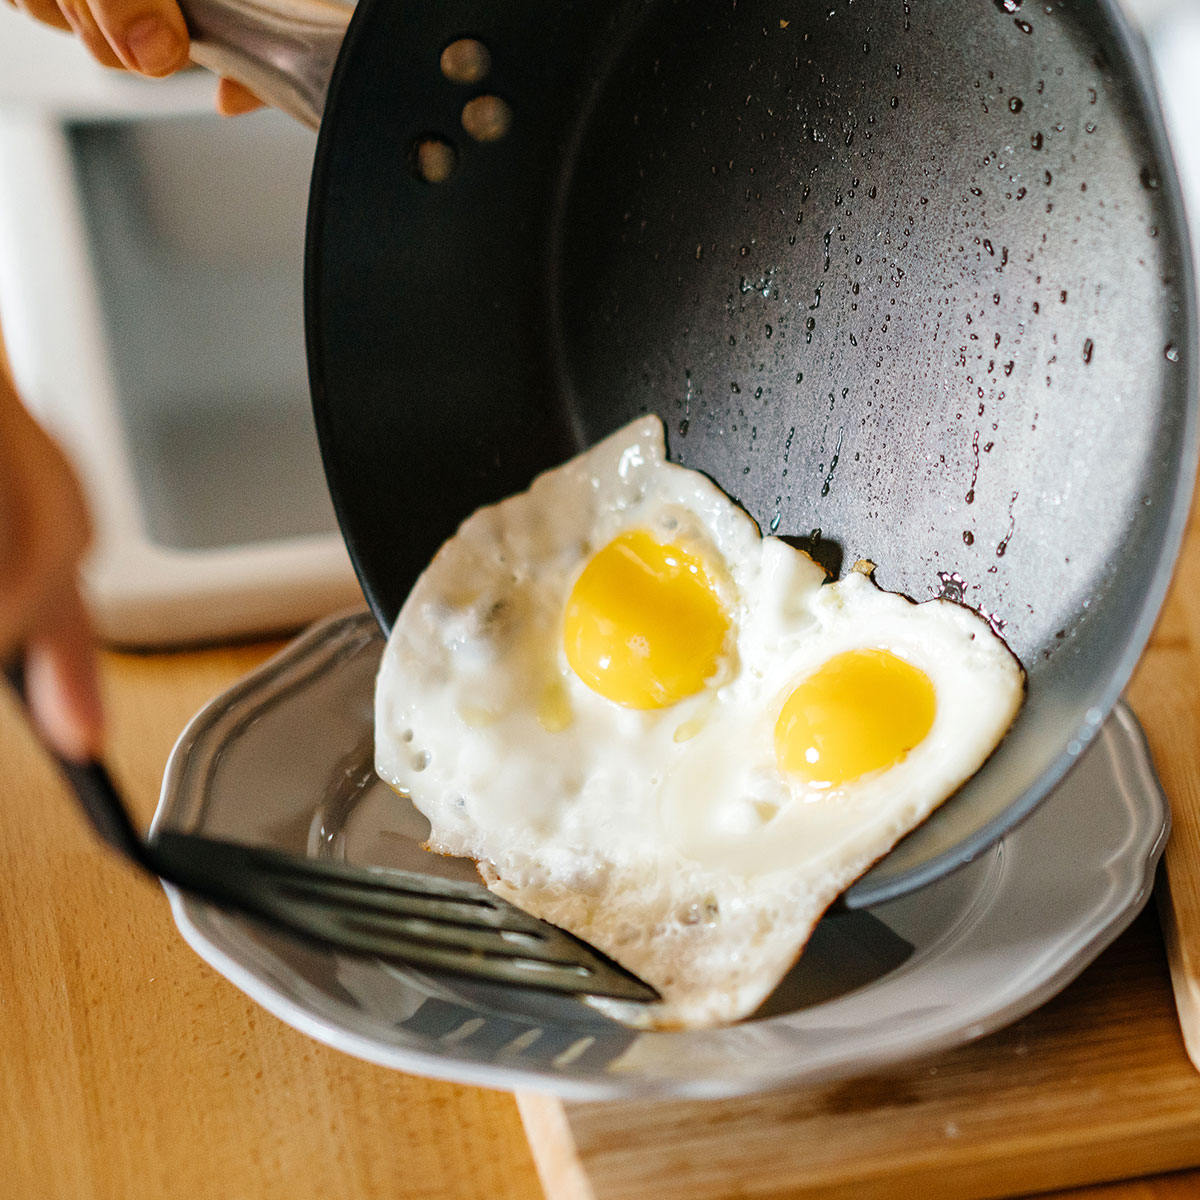 Tráng trứng đã là cách tốt nhất để chế biến món ăn này?